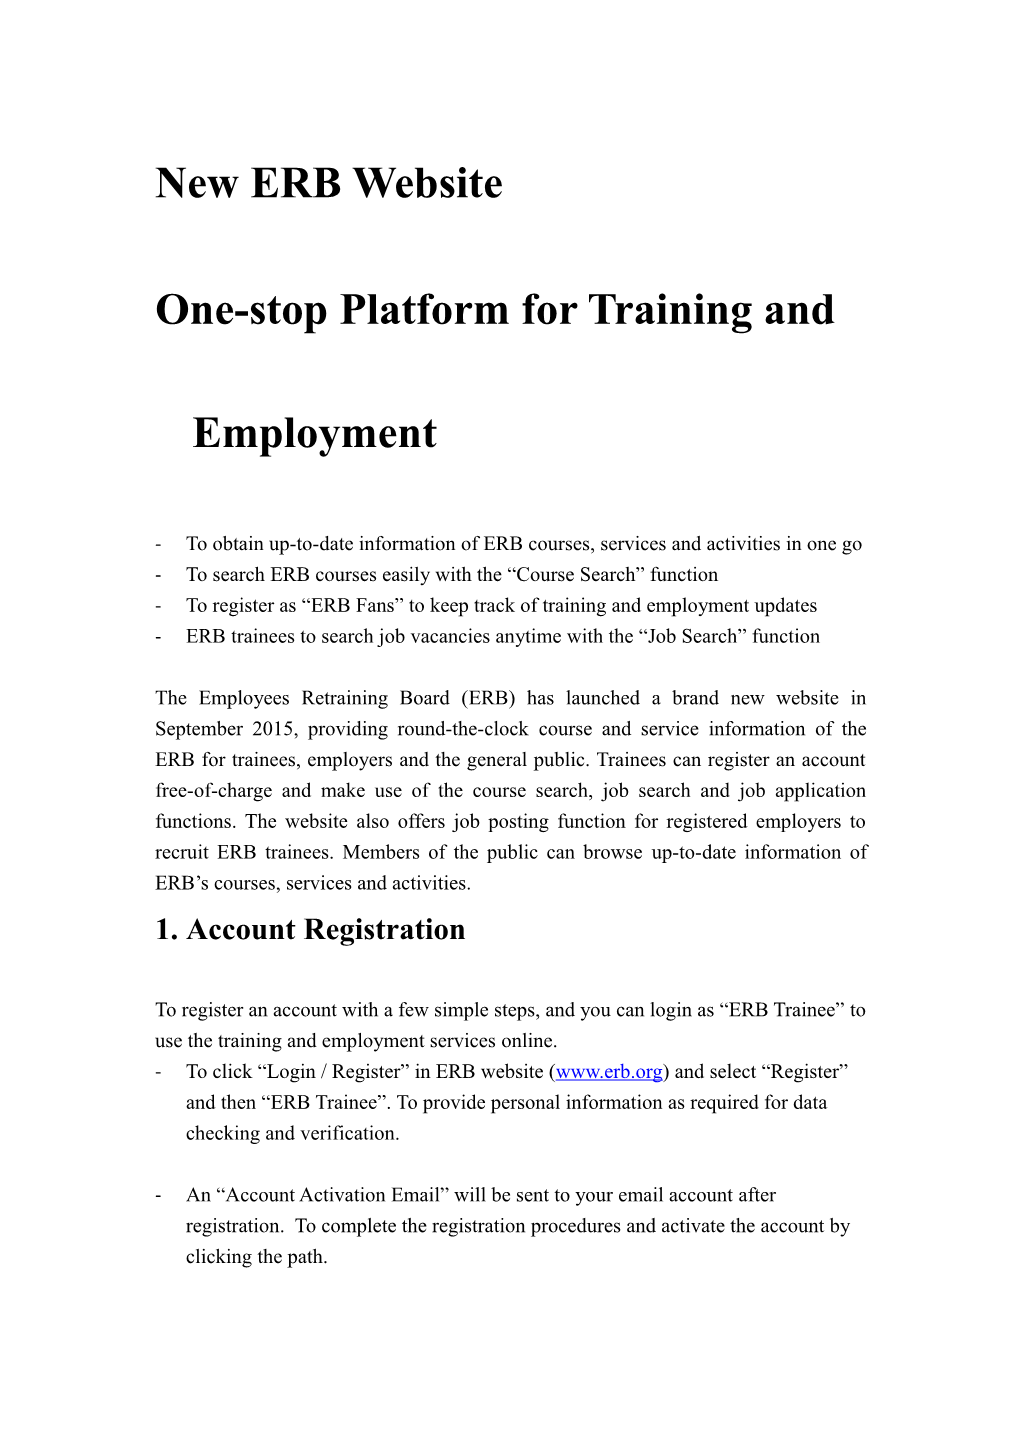 New ERB Website (Leaflet for Trainees) (October 2015) Leaflet